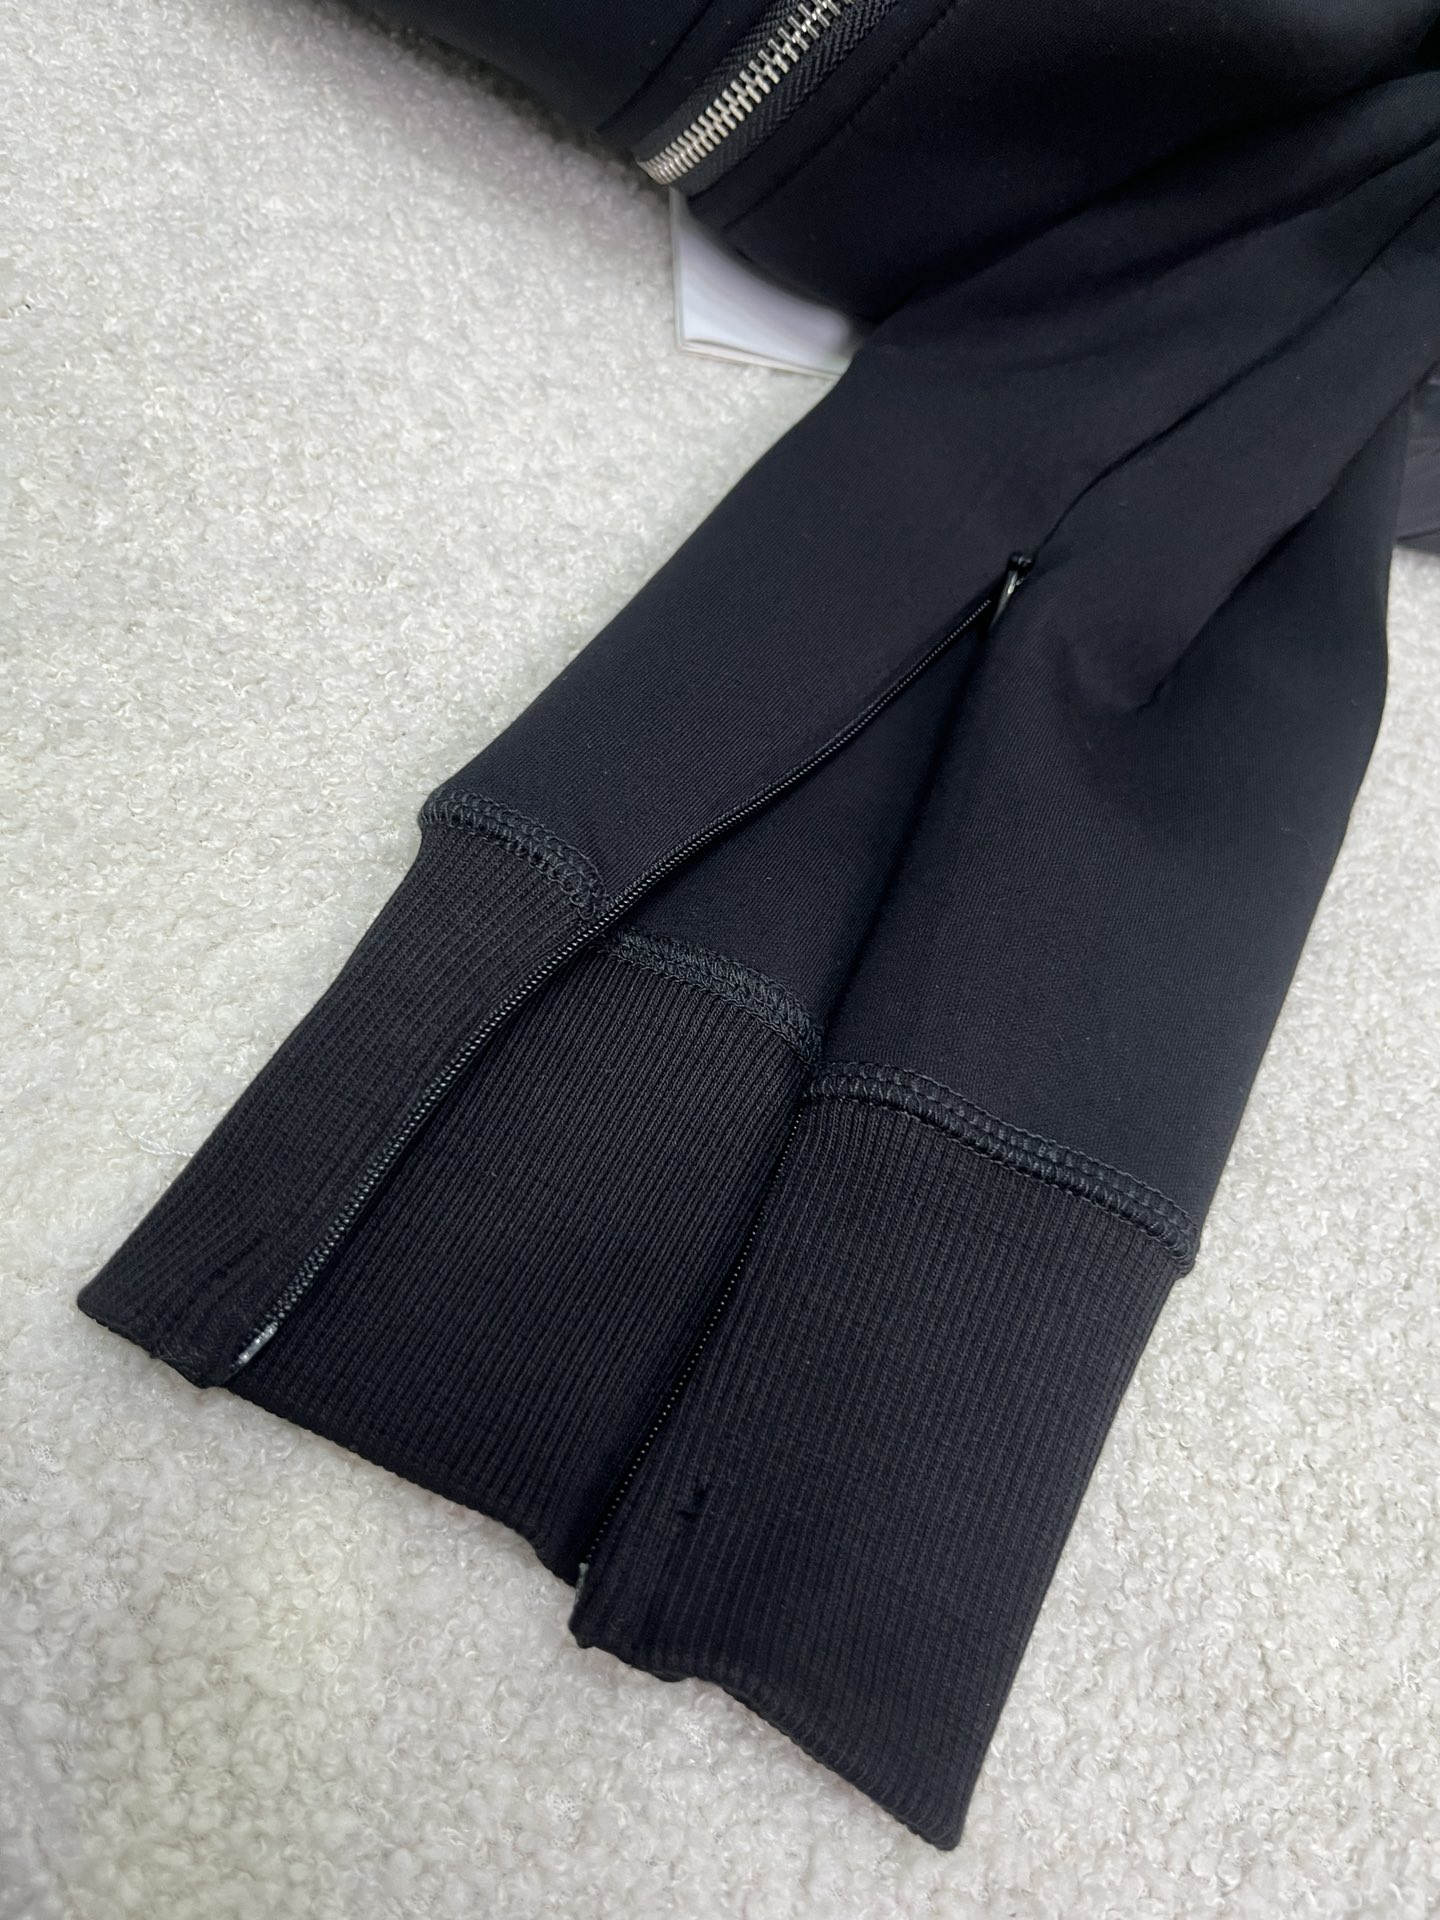 新款Sacai空气层外套订单产品一个小短款的设计后背用了大量拼接的褶皱下脚用了羽绒面料拼接手法层次设计感